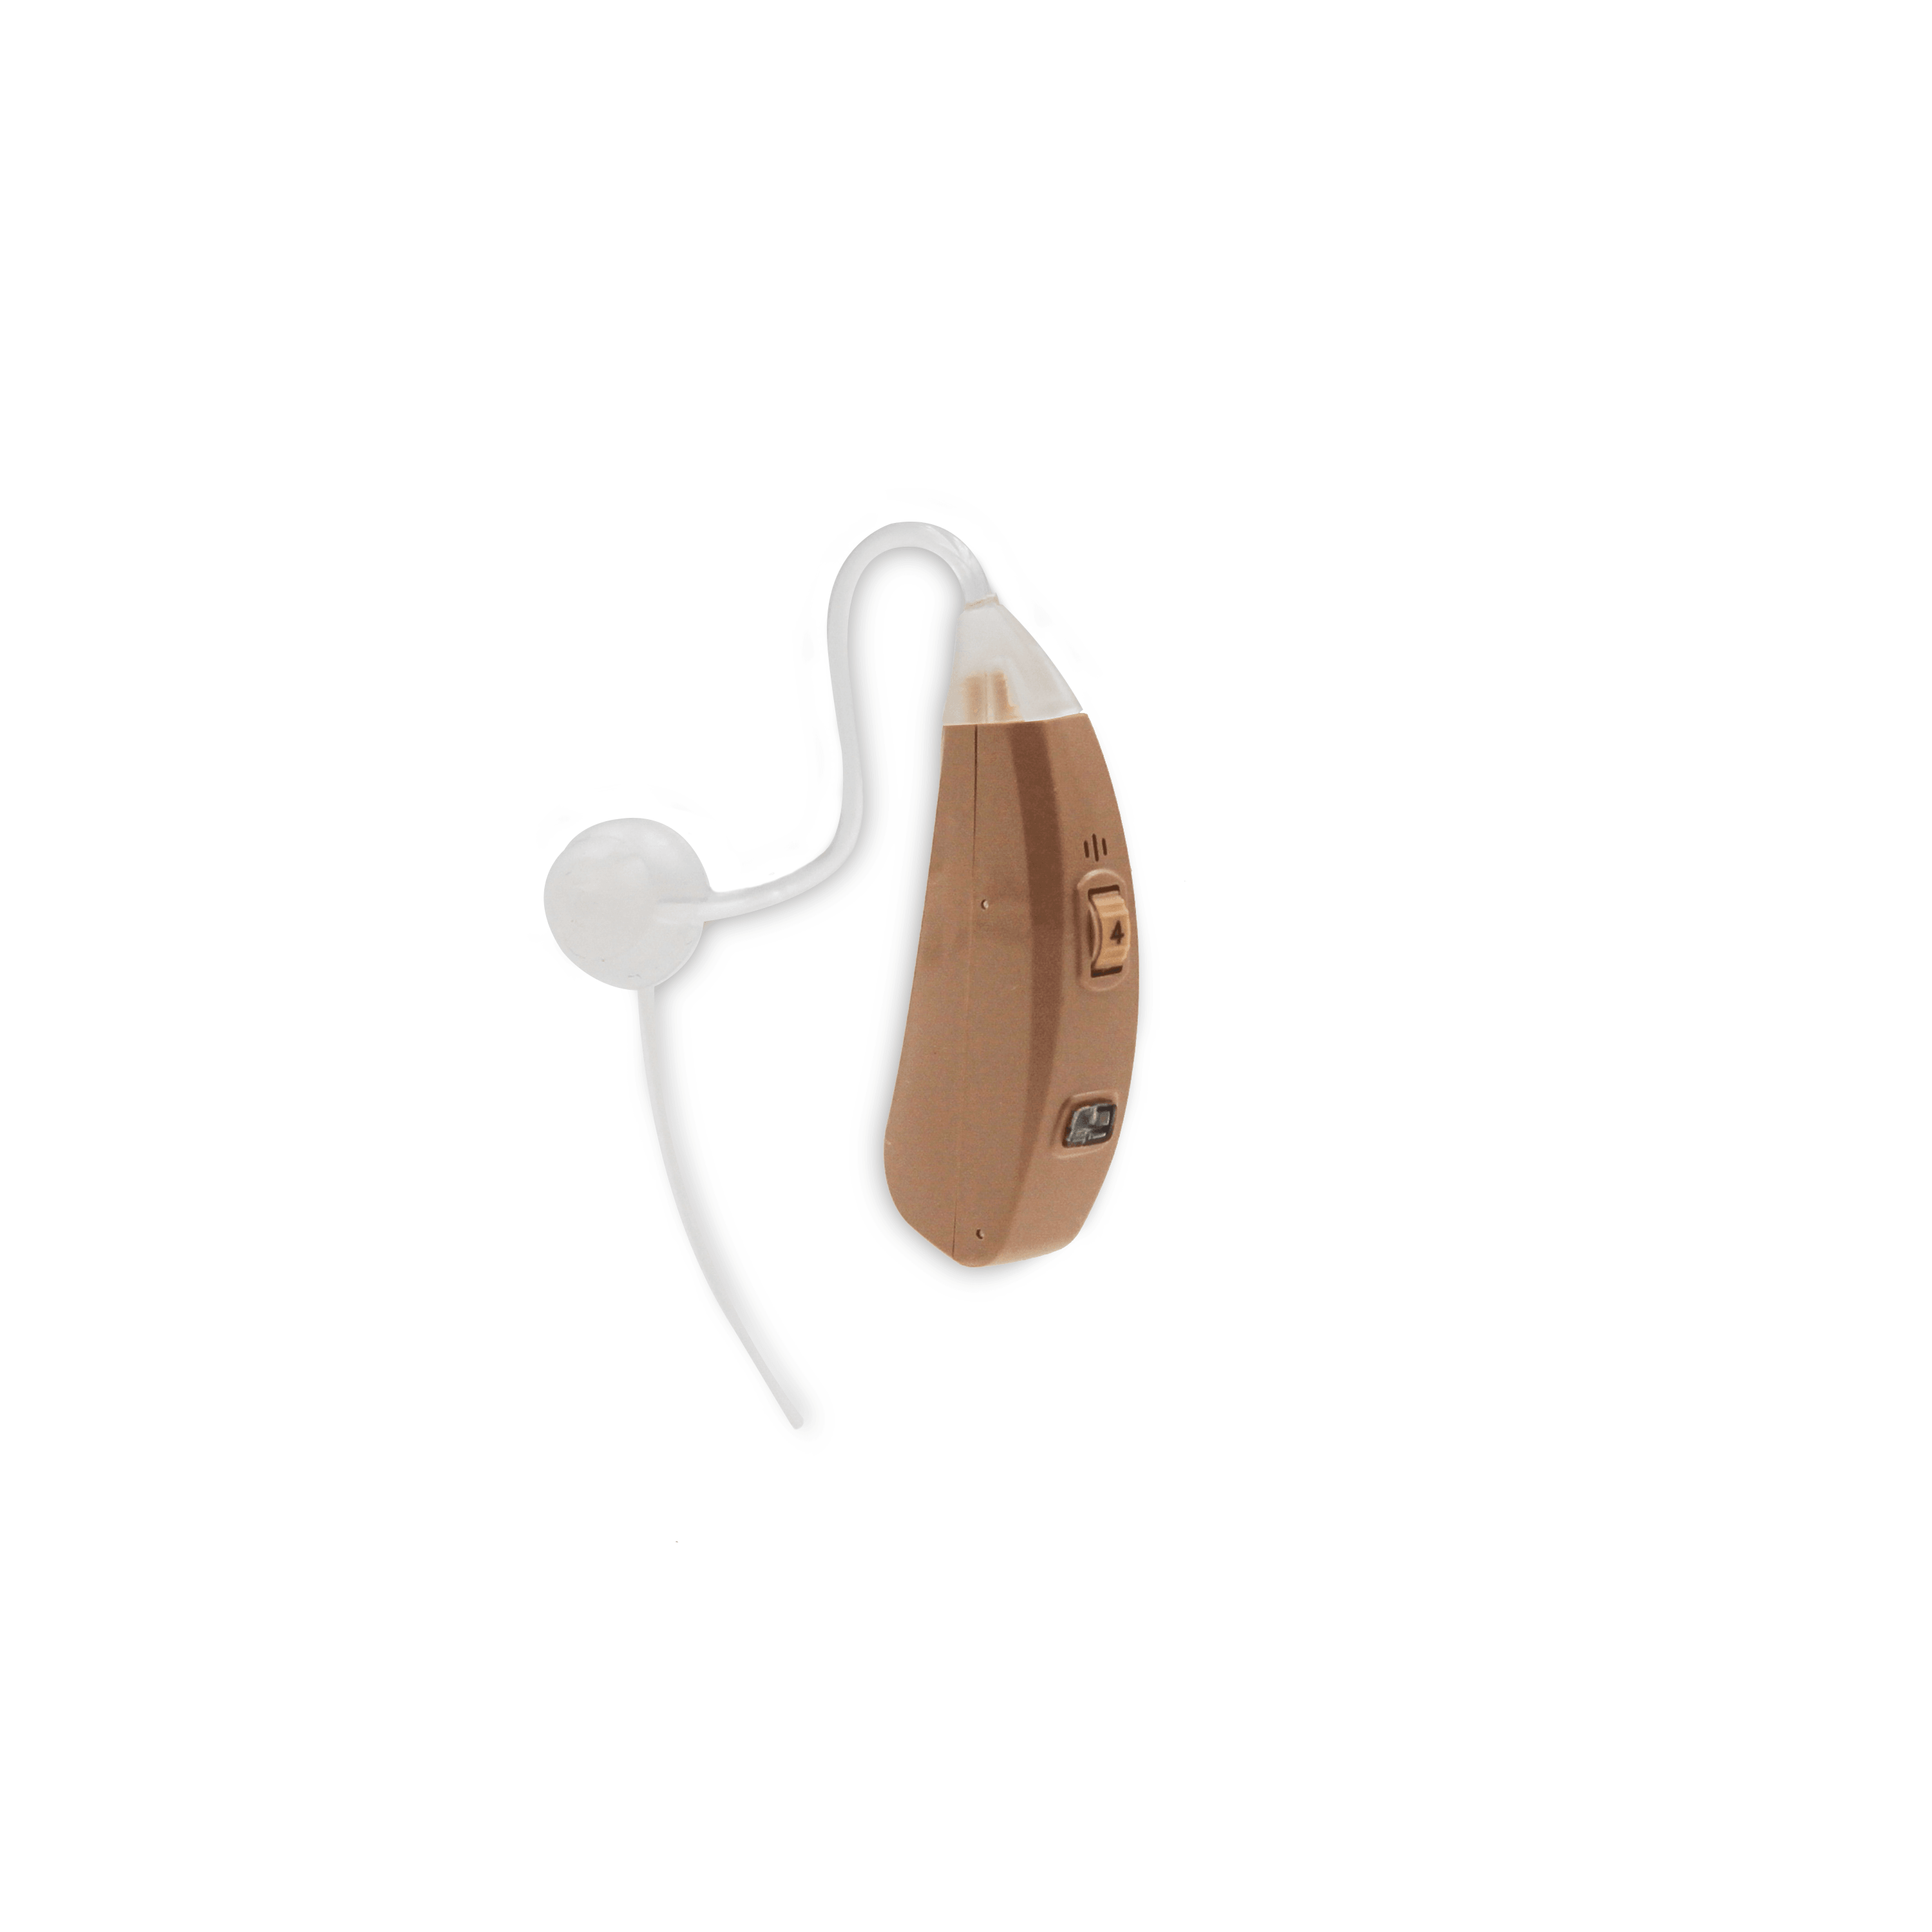 Solución auditiva recargable alternativa a audífonos